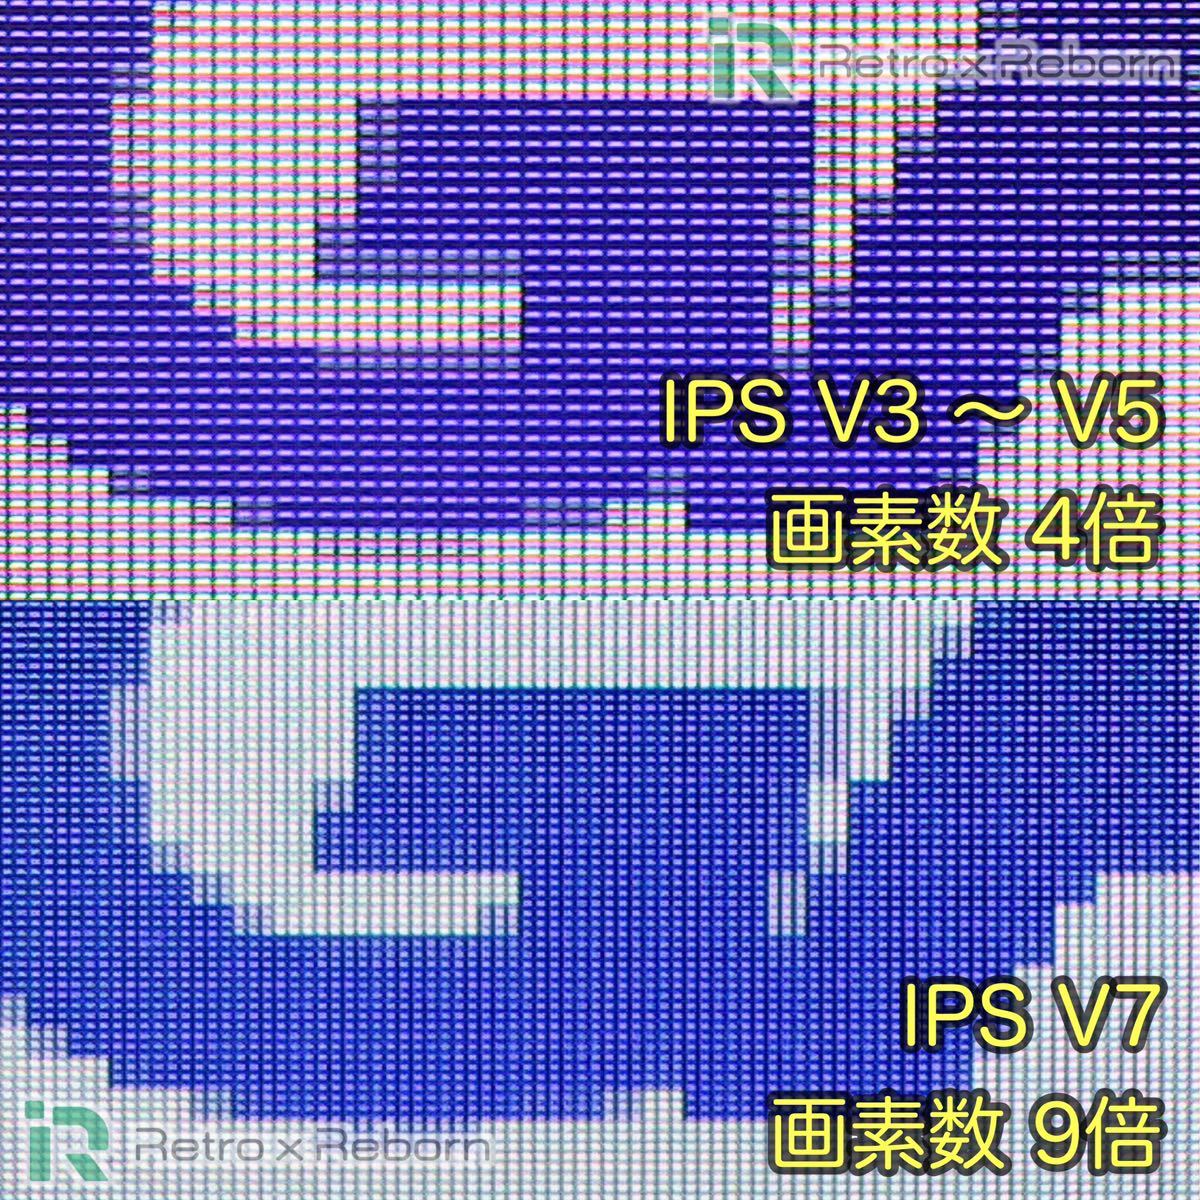 ゲームボーイアドバンス SP 本体 IPS V7 バックライト液晶搭載 009